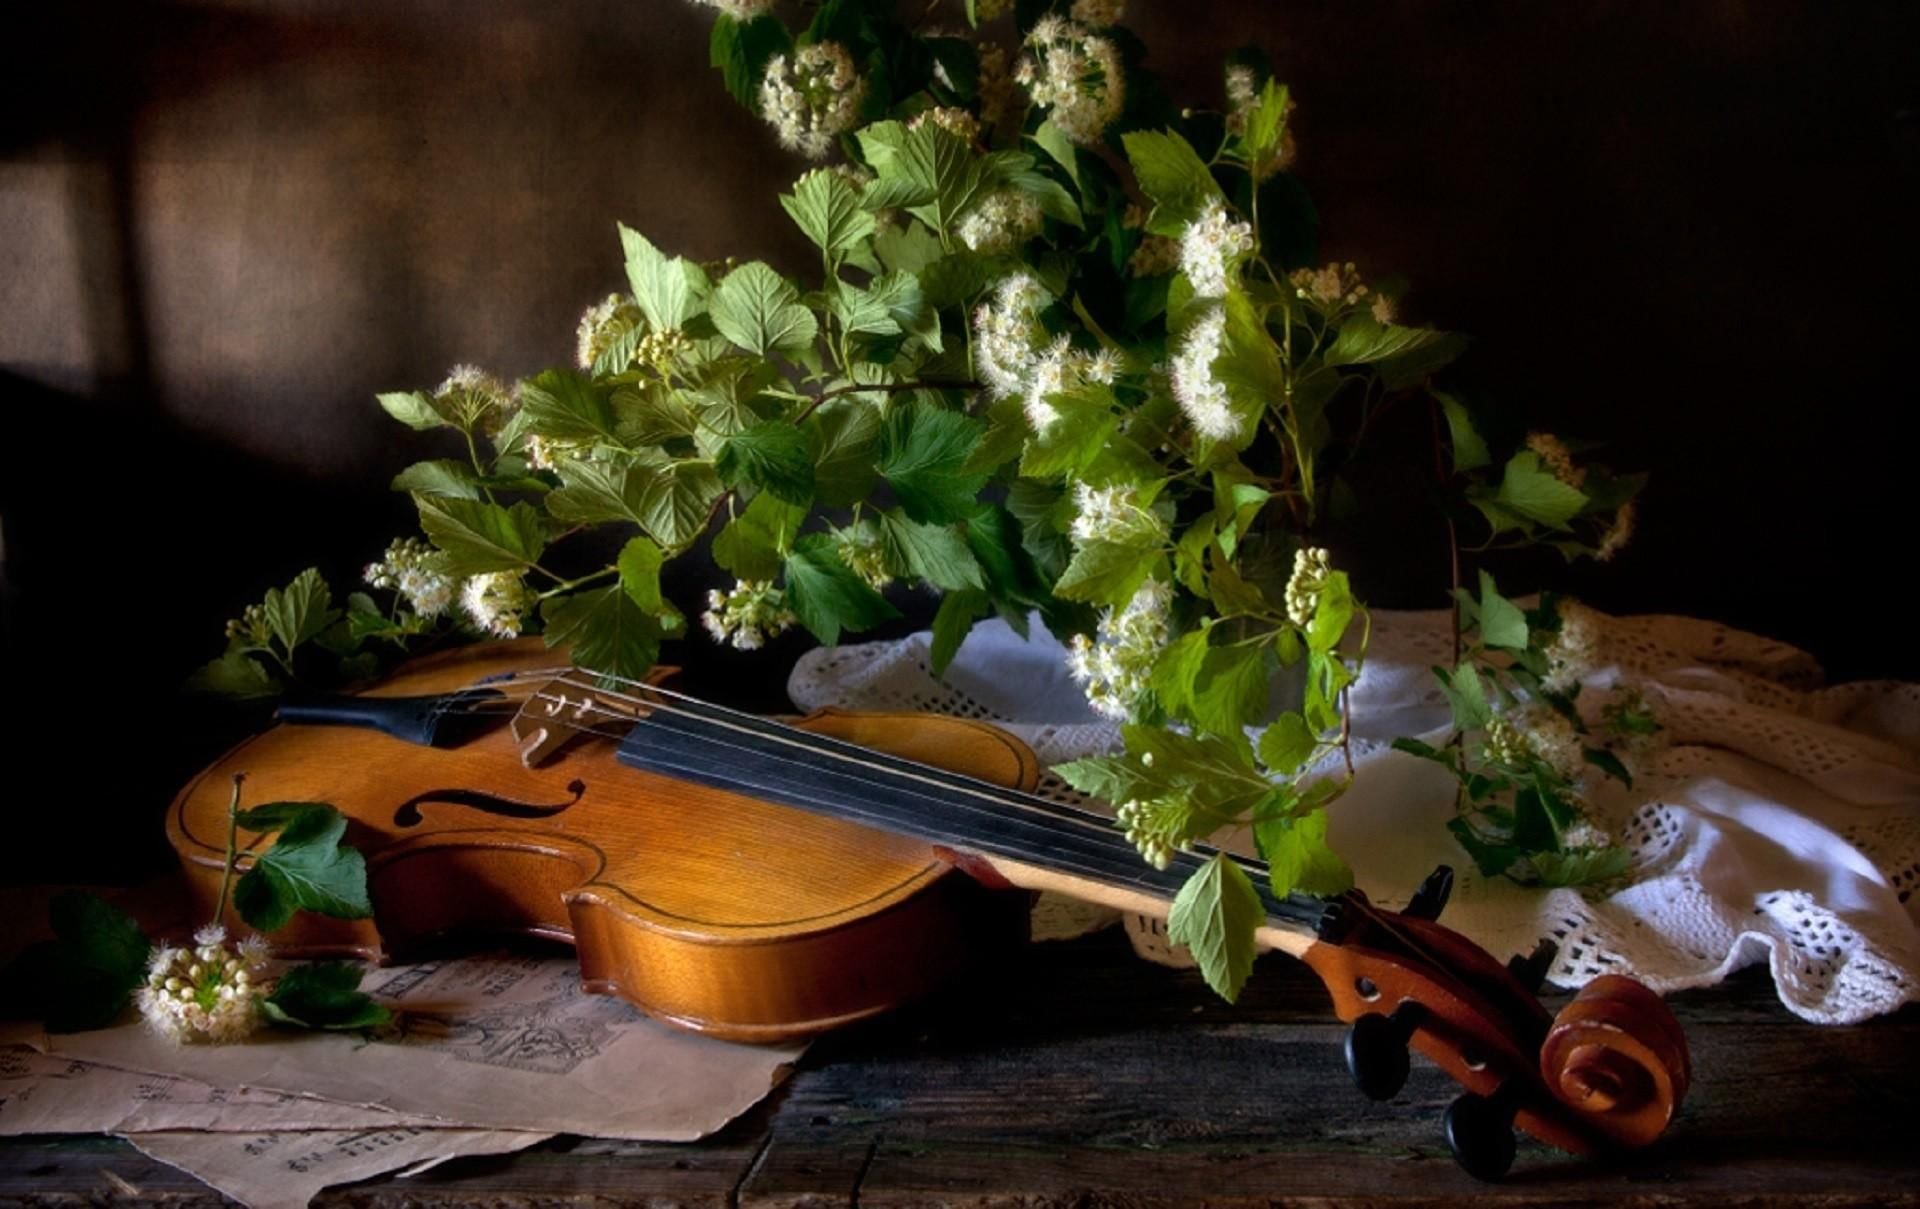 Инструментальная музыка скрипка. Натюрморт с музыкальными инструментами. Натюрморт со скрипкой и цветами. Натюрморт со скрипкой. Скрипка и цветы.